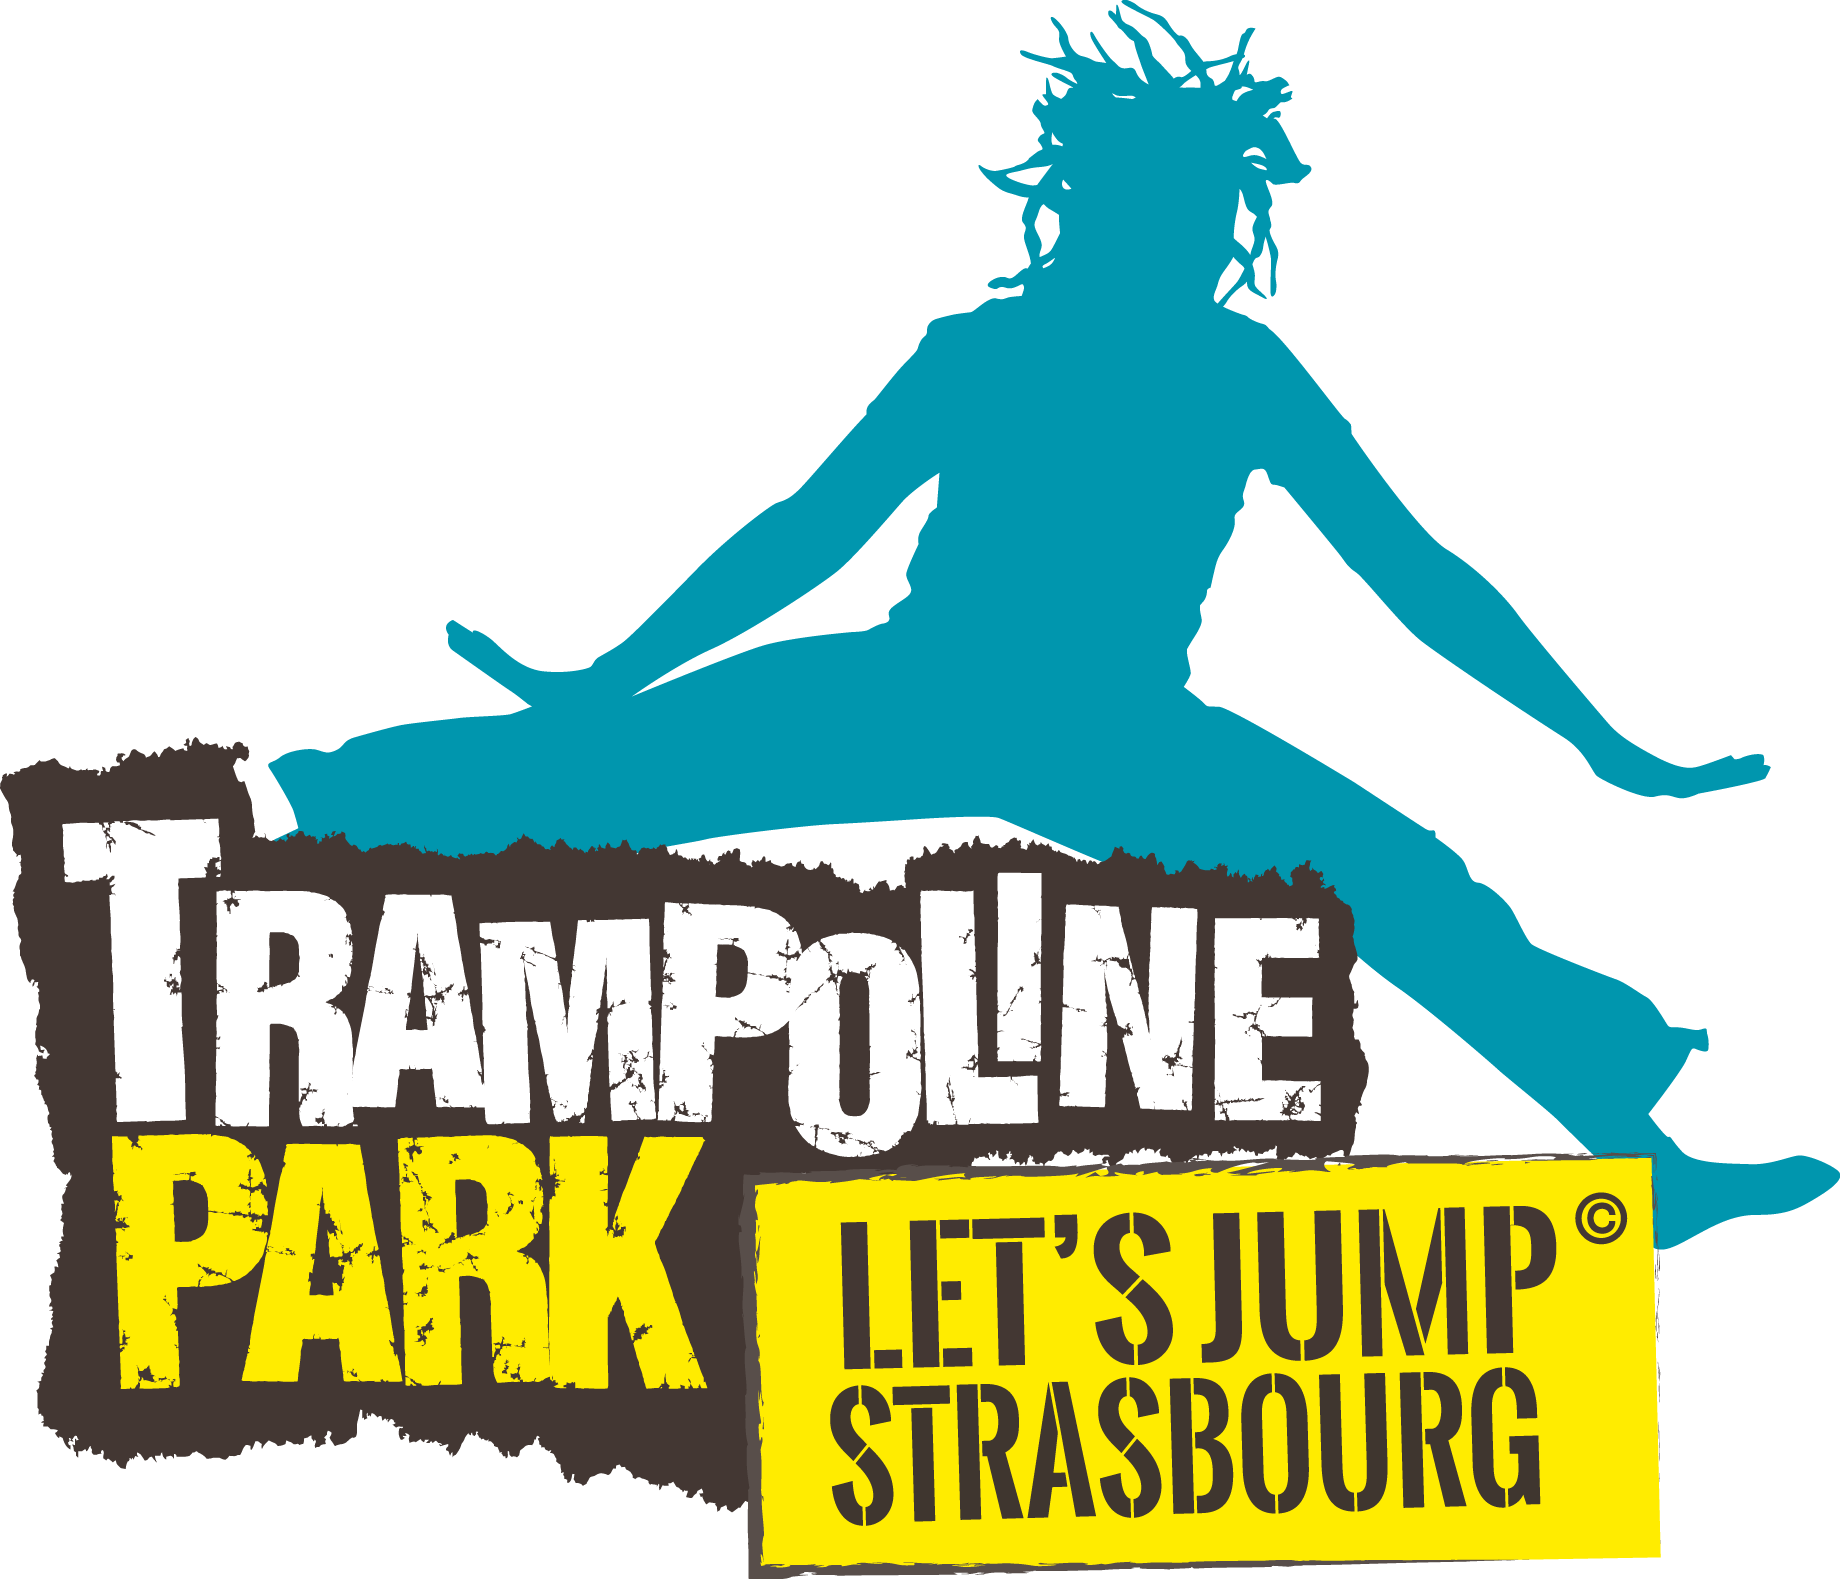 trampoline park strasbourg lets jump sur topflex.fr